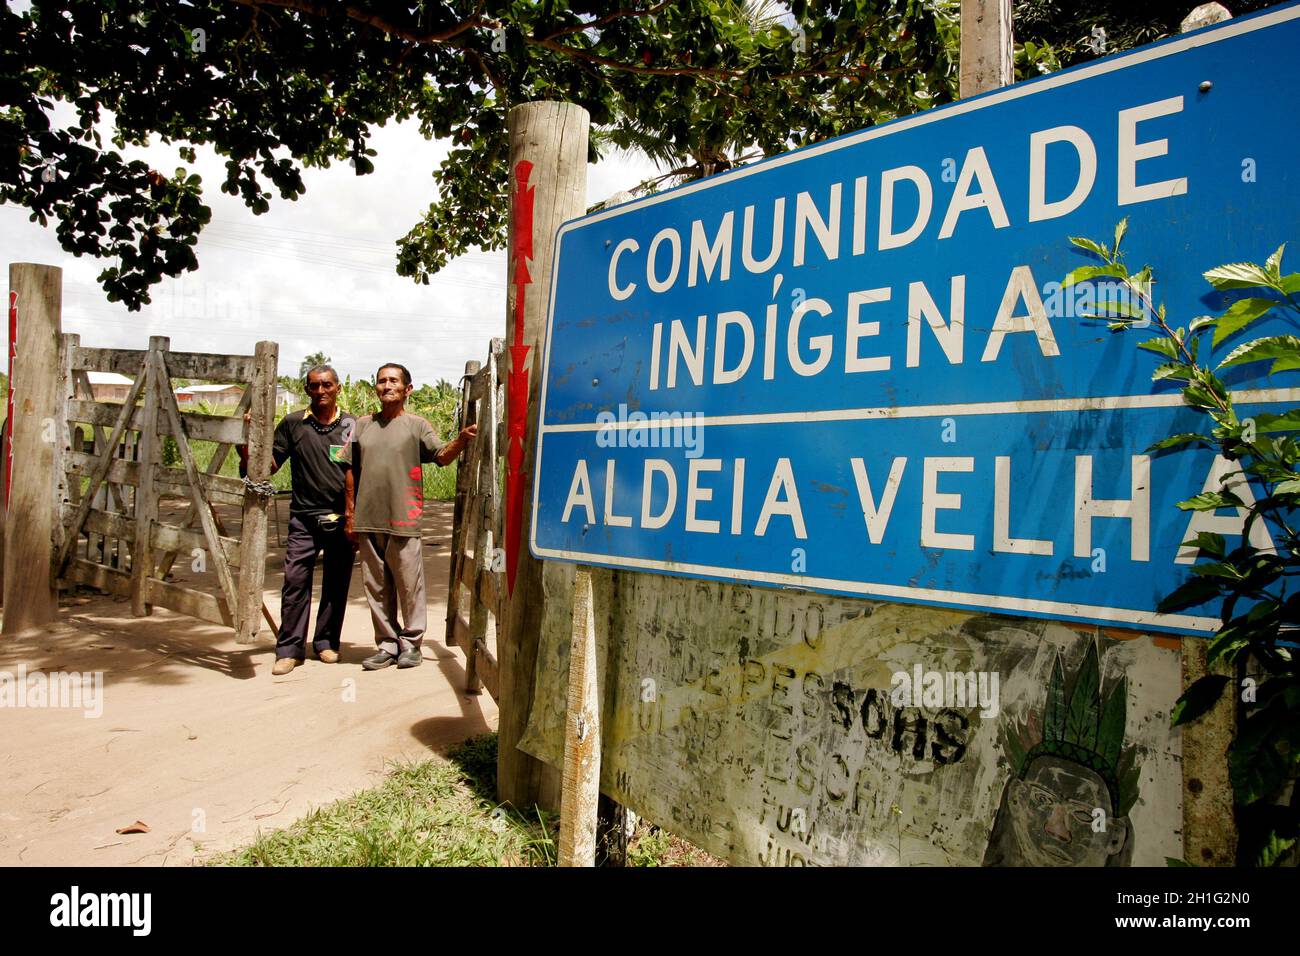 porto seguro, bahia / brésil - 1er janvier 2011 : porte d'entrée d'Aldeia Velha, territoire indigne du groupe ethnique Pataxo dans la ville de Porto Segu Banque D'Images